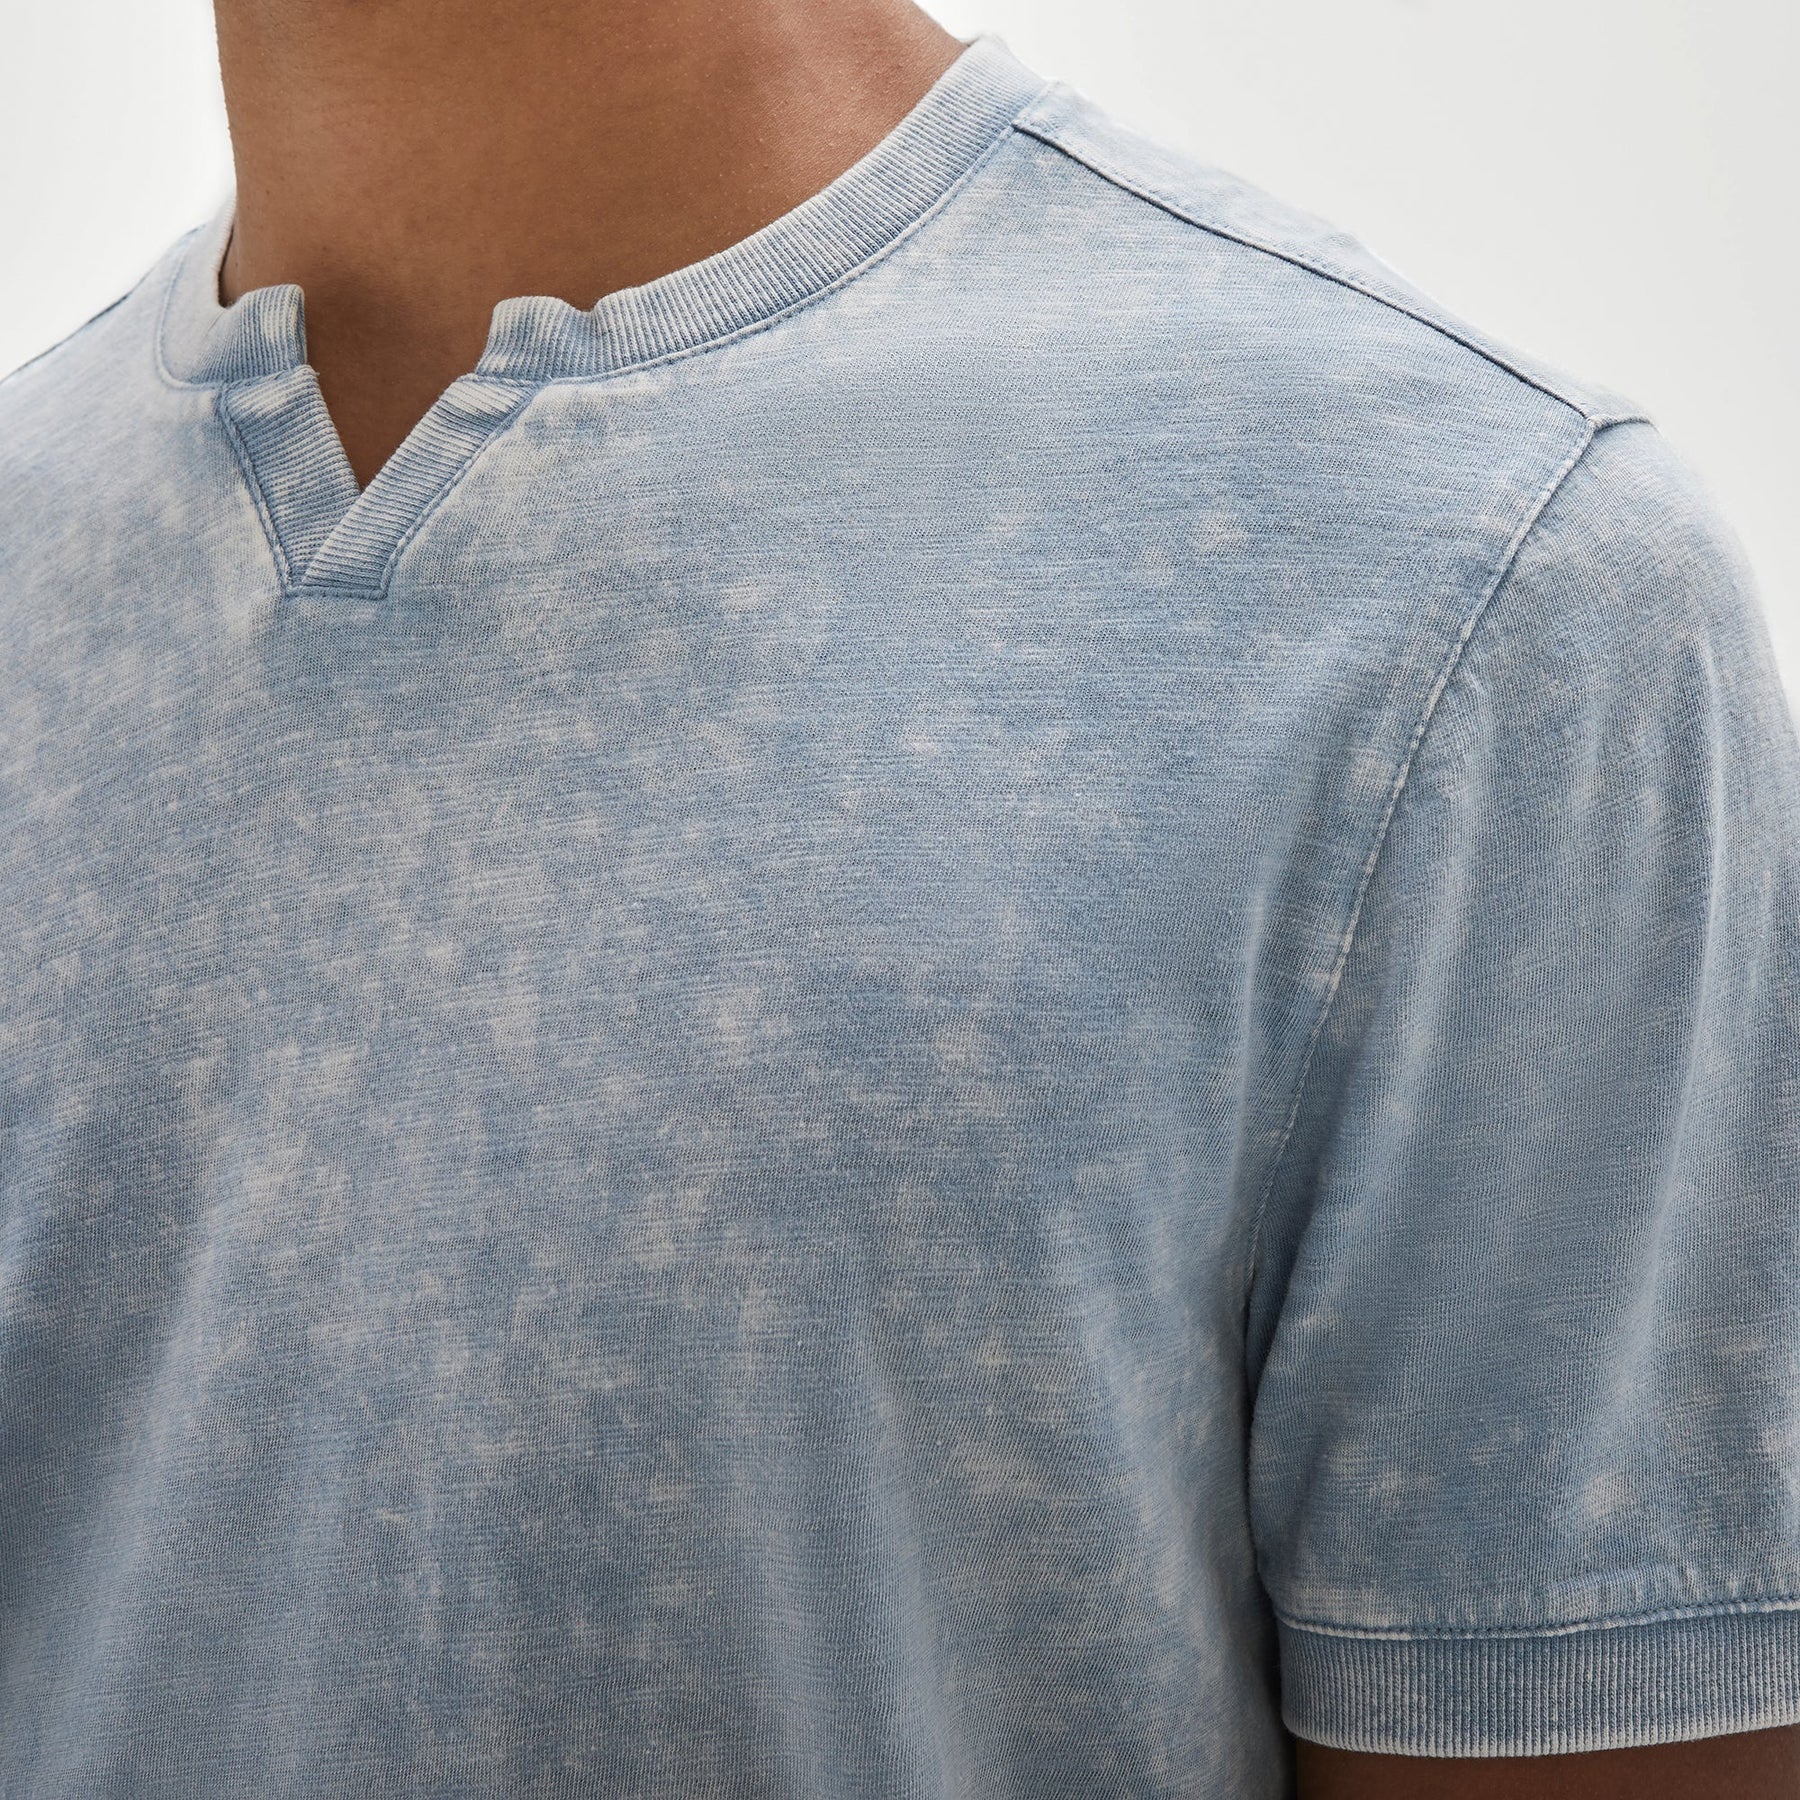 T-Shirt split pour homme par Robert Barakett | RB31075/Reno Bleu/Blue| Boutique Vvög, vêtements mode pour homme et femme